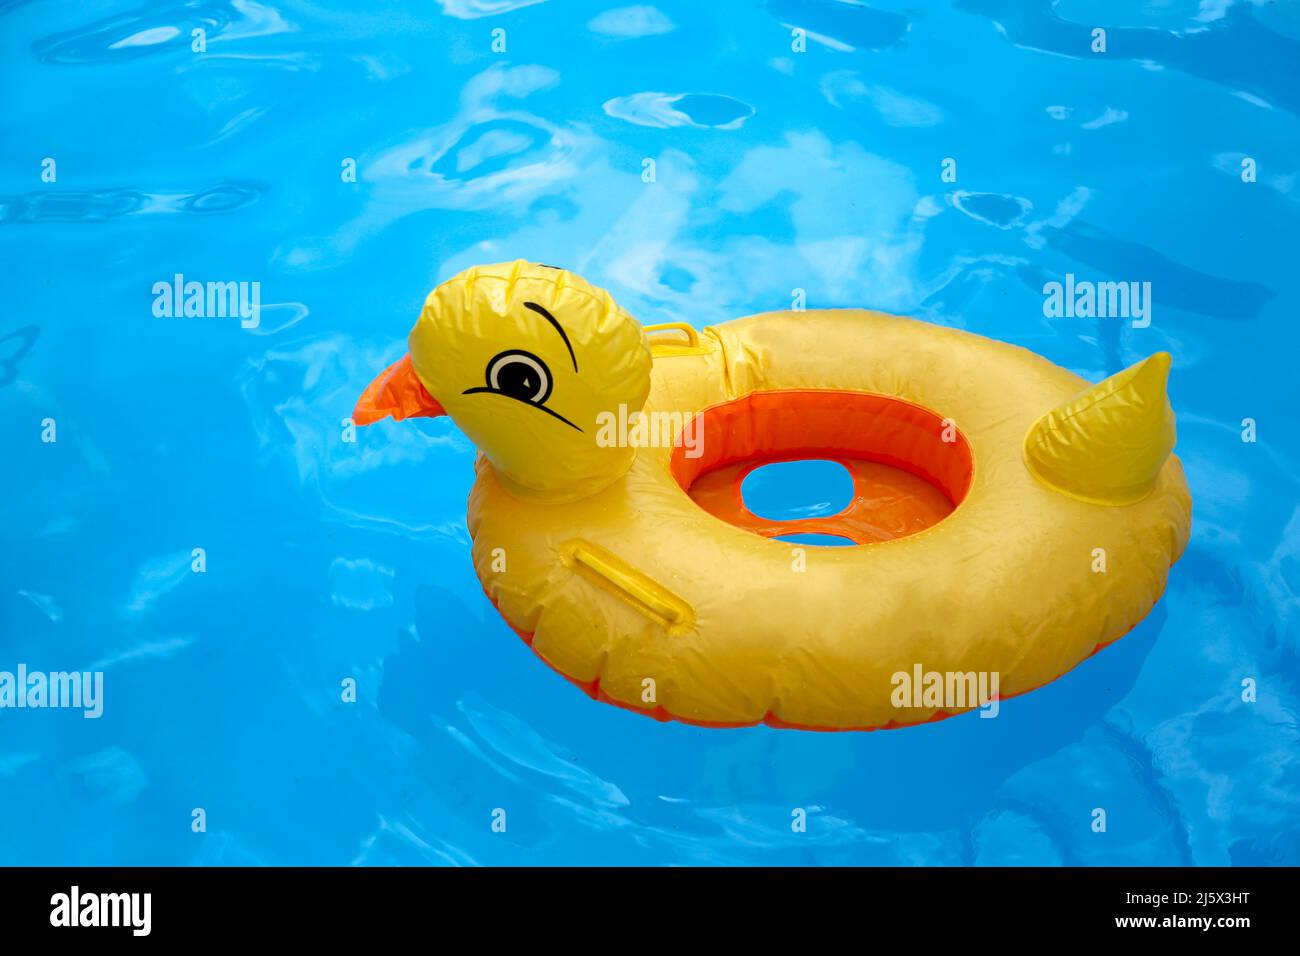 Jouet gonflable de caneton en plastique jaune dans une piscine bleue avec de l'eau Banque D'Images